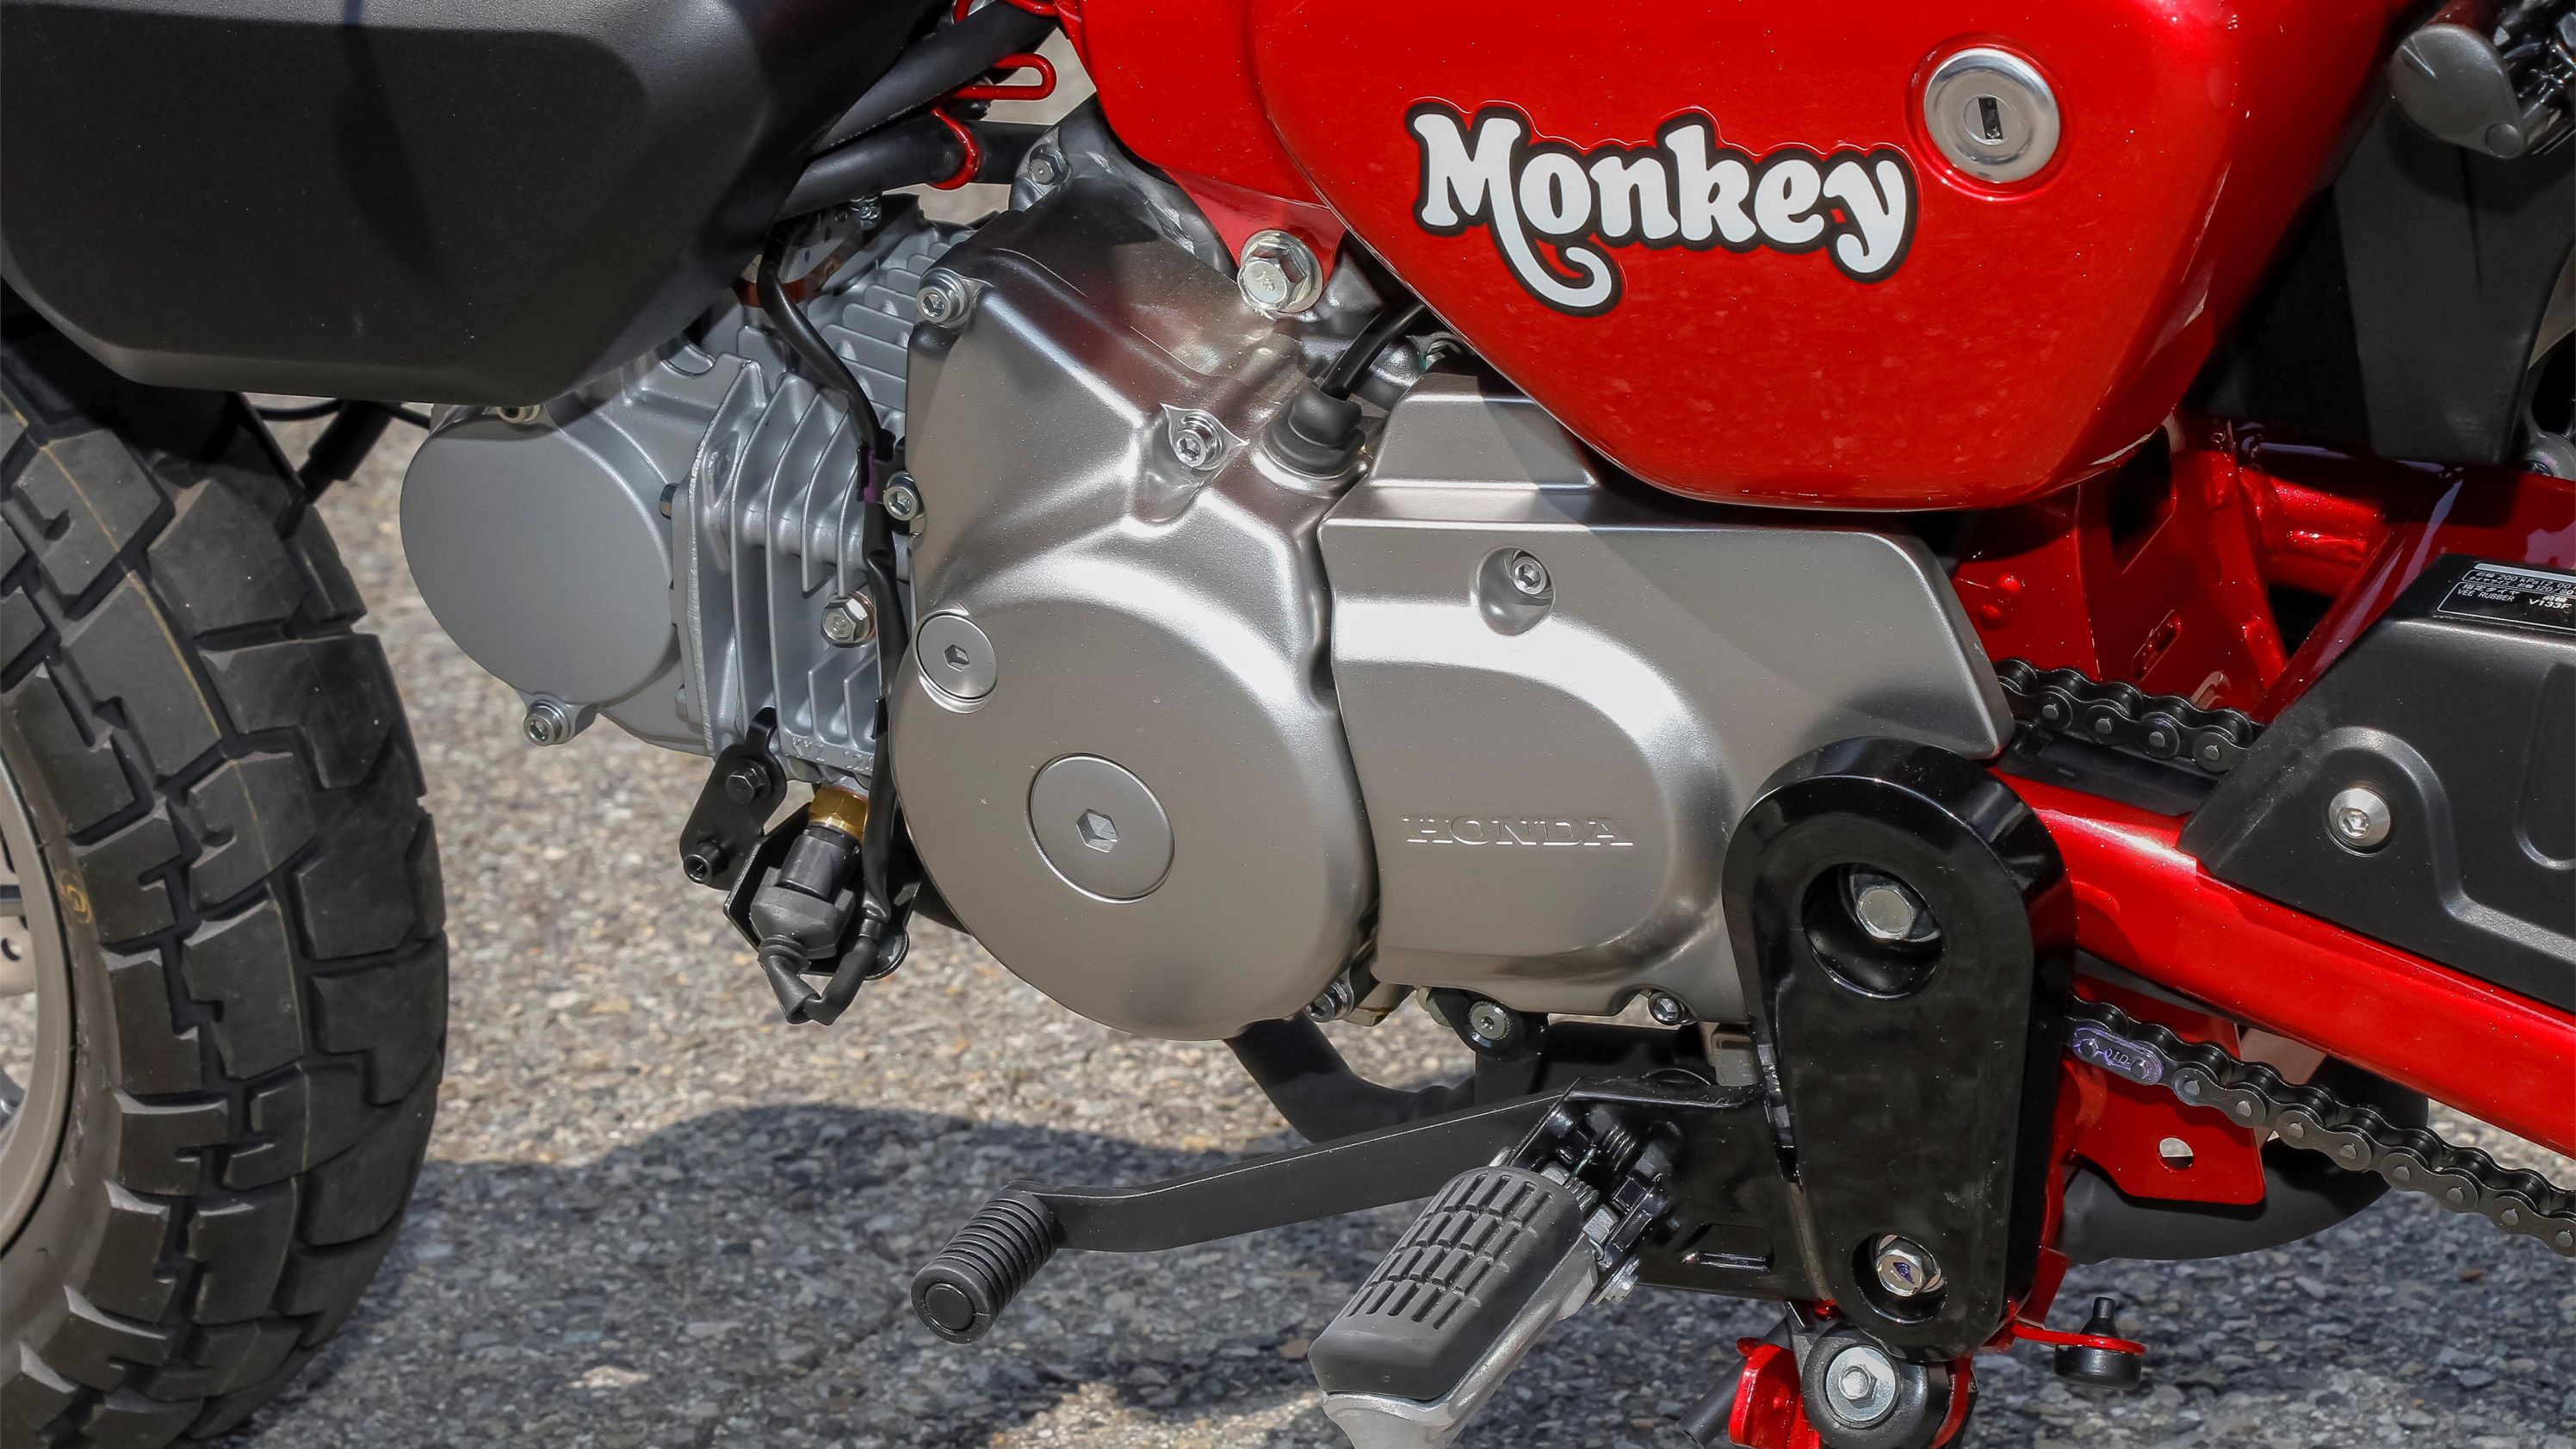 2018 - 2020 Honda Monkey